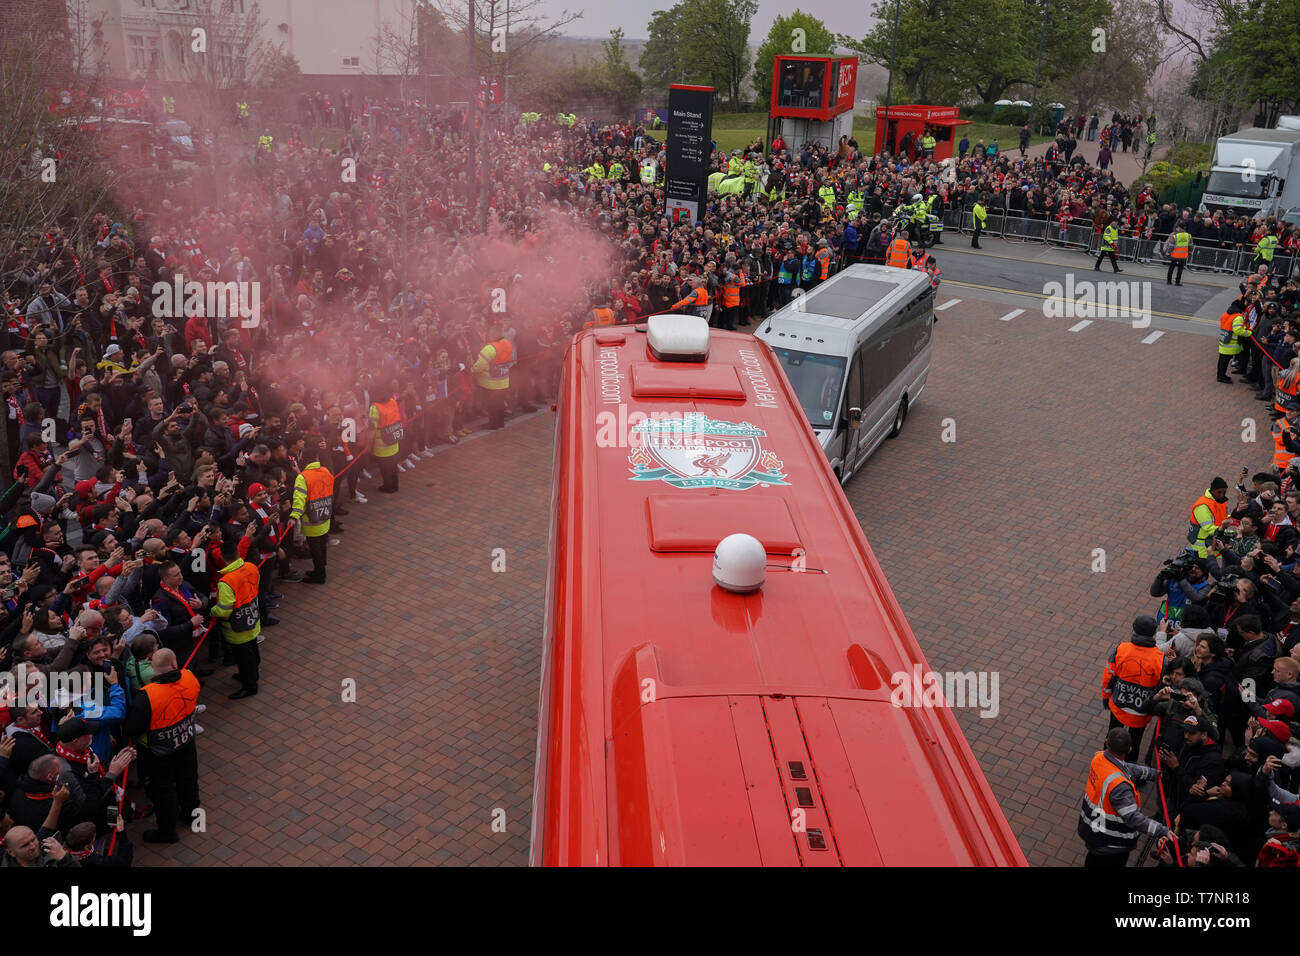 L'entraîneur de l'équipe du Liverpool FC arrive à Anfield 7 mail 2019 , le stade d'Anfield, Liverpool, Angleterre ; demi-finale de la Ligue des Champions, match retour, Liverpool FC vs FC Barcelone Crédit : Terry Donnelly/News Images Banque D'Images